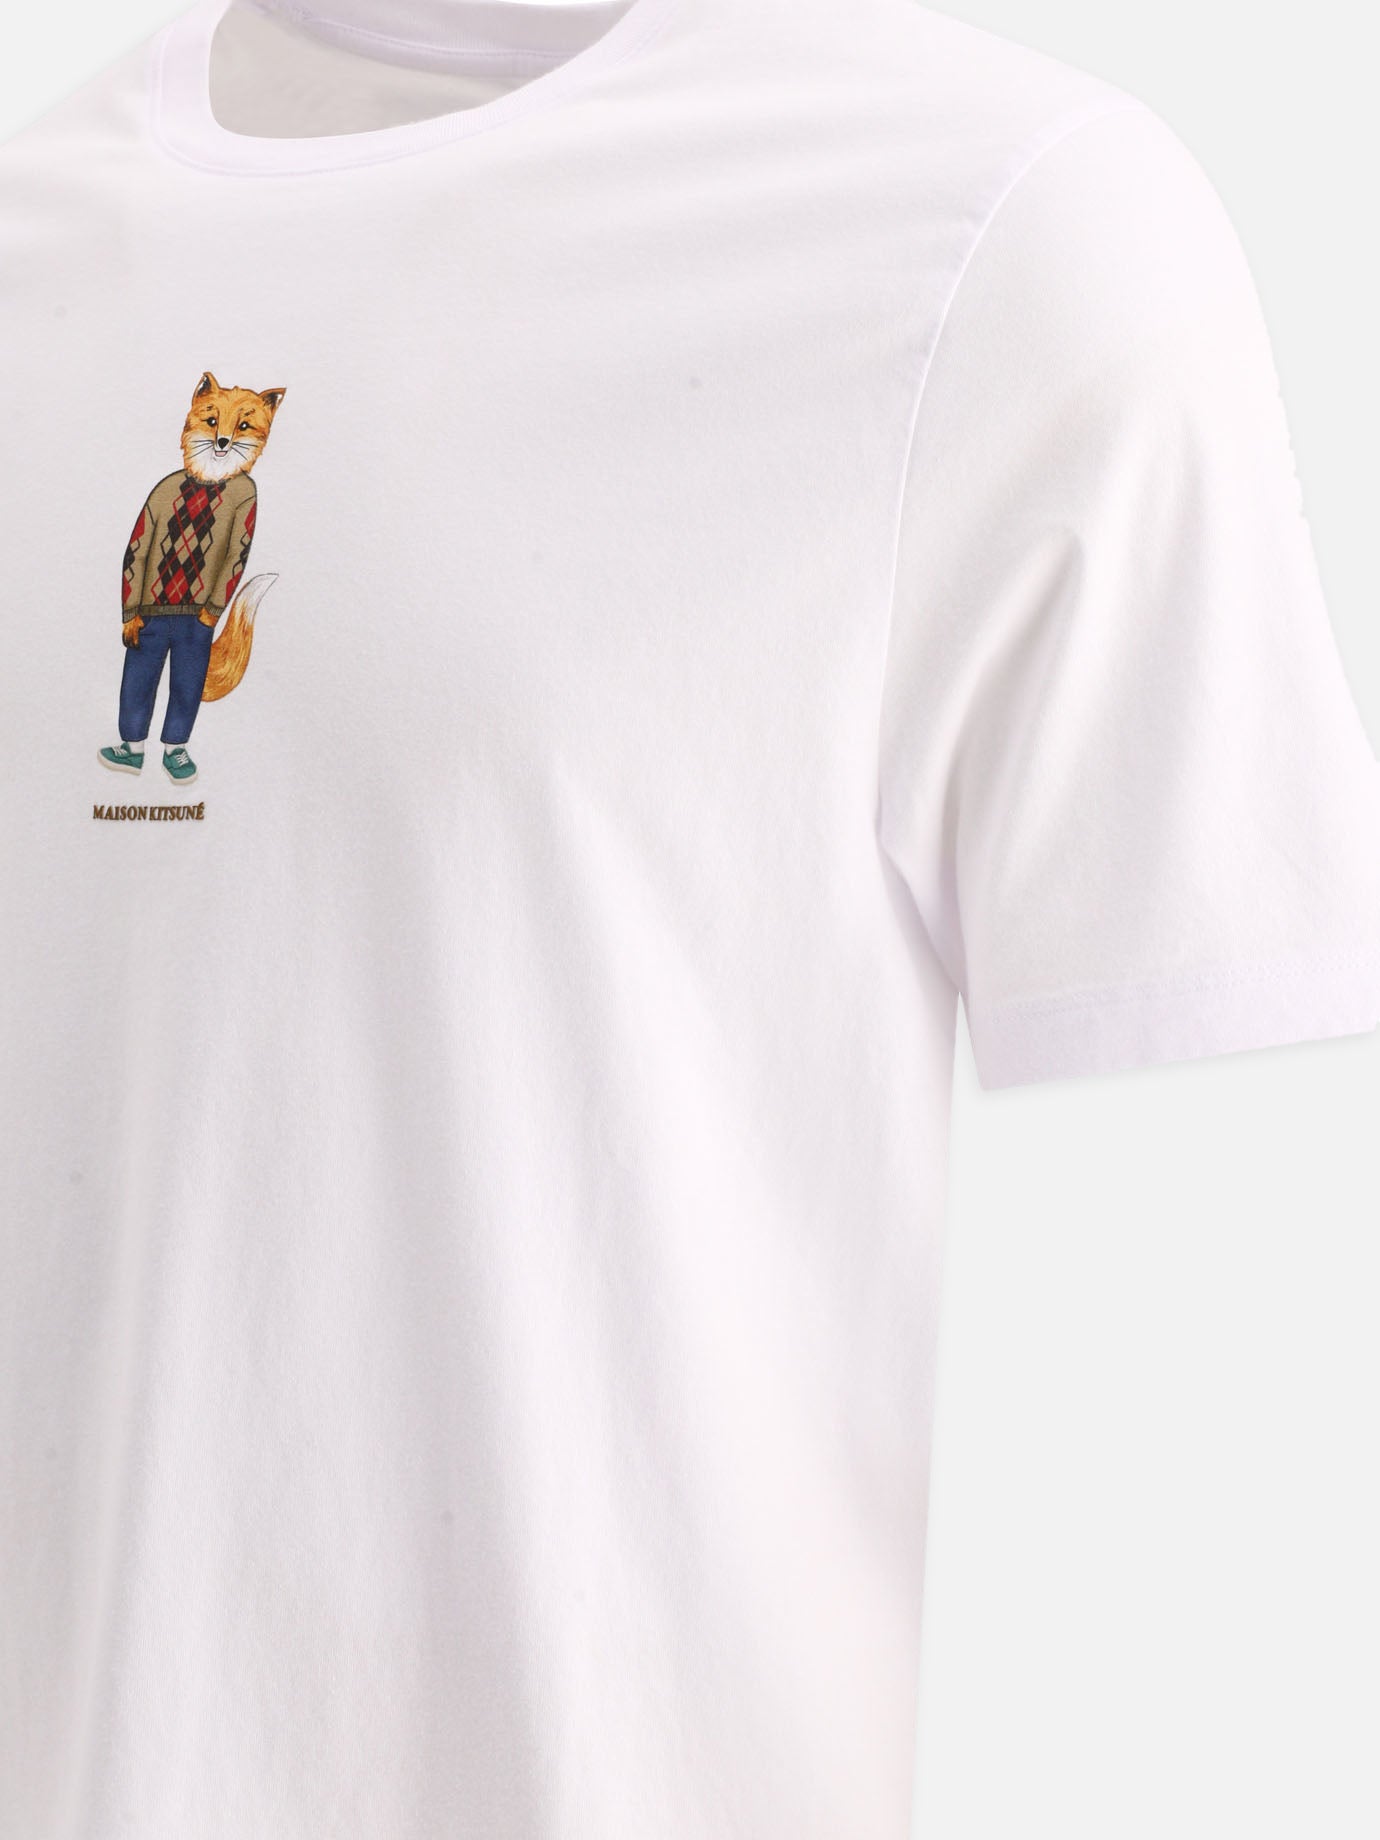 "Dressed Fox" t-shirt